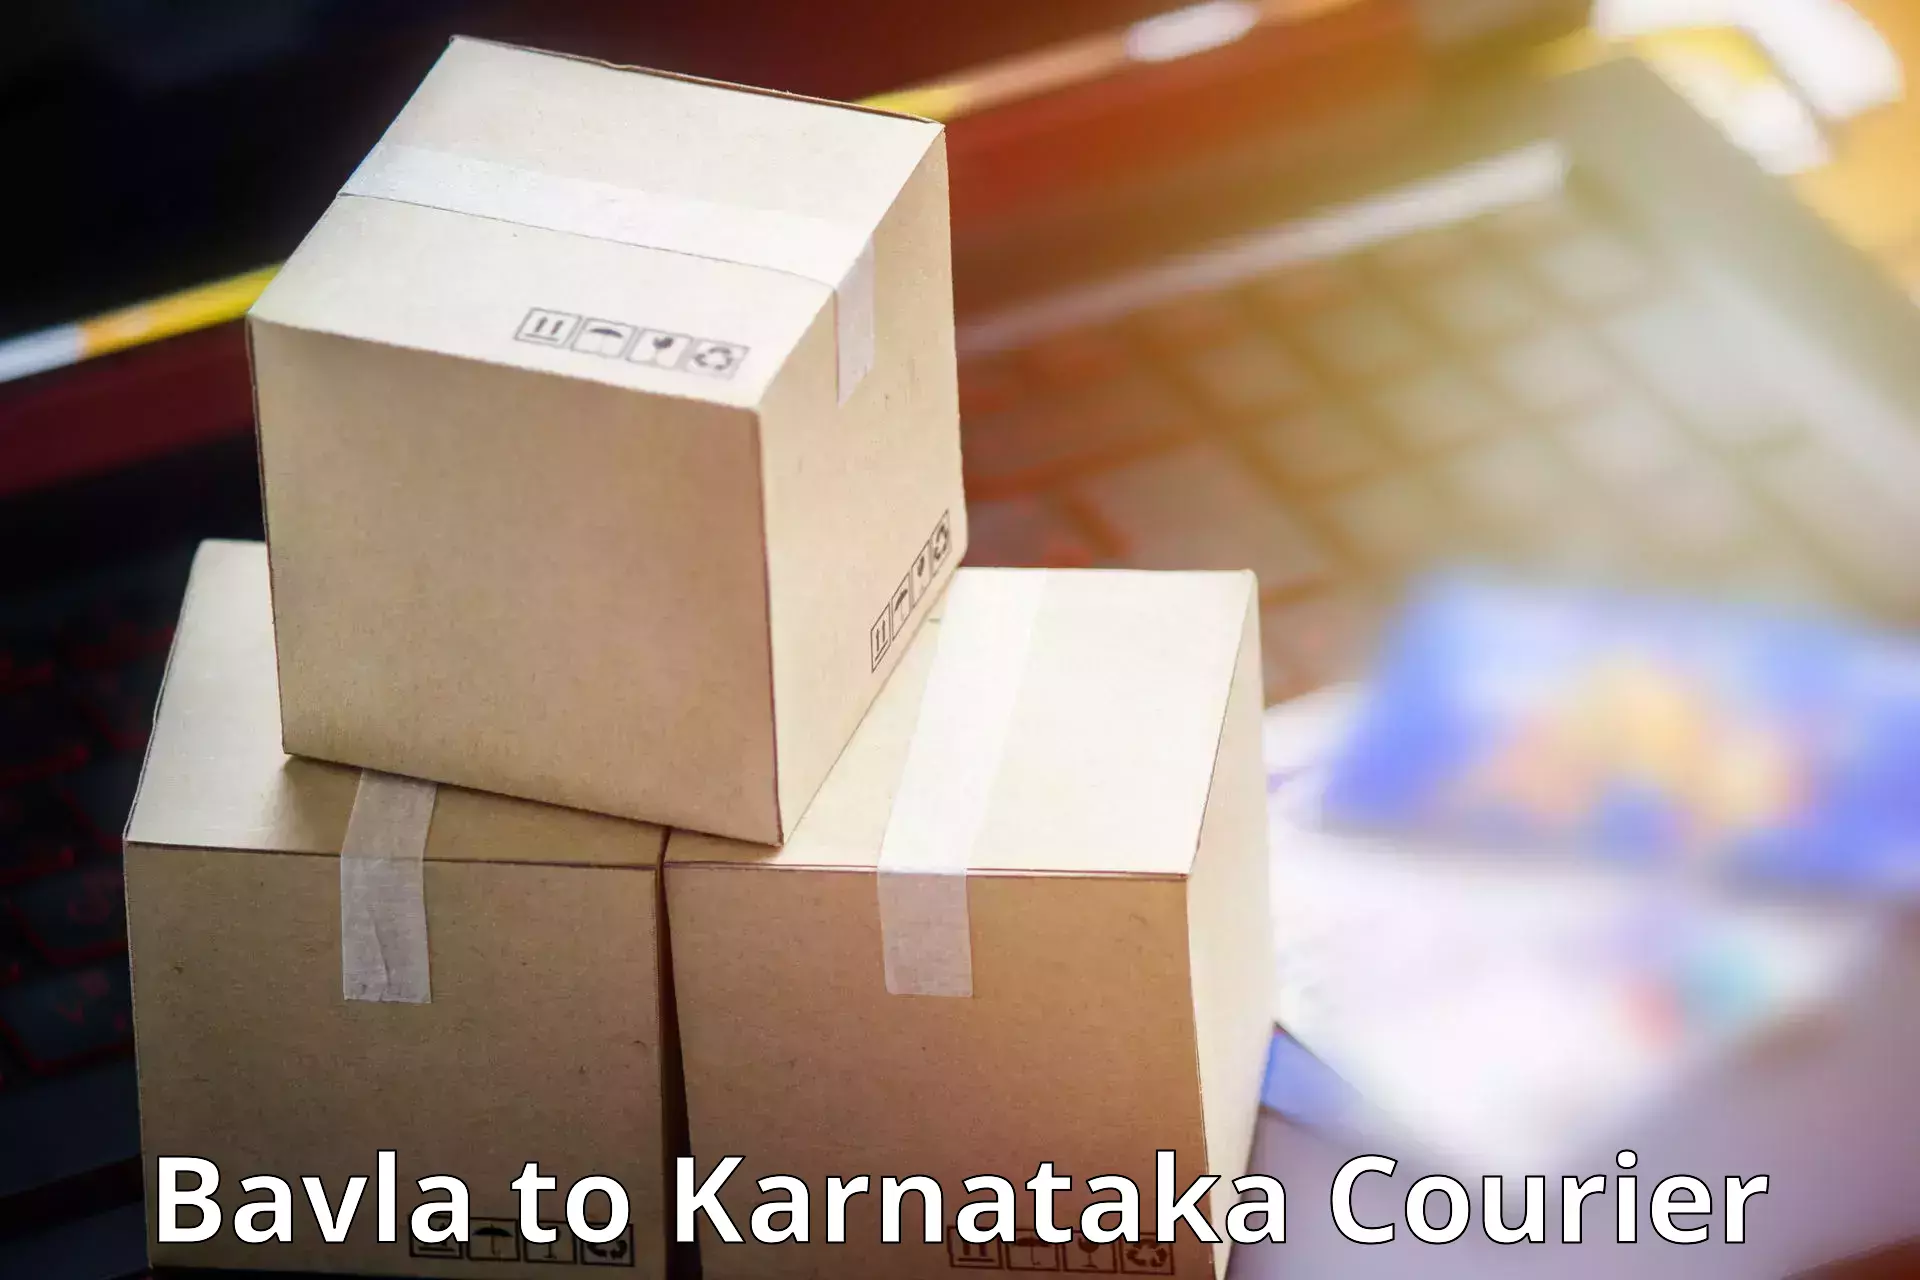 Courier service comparison in Bavla to Udupi